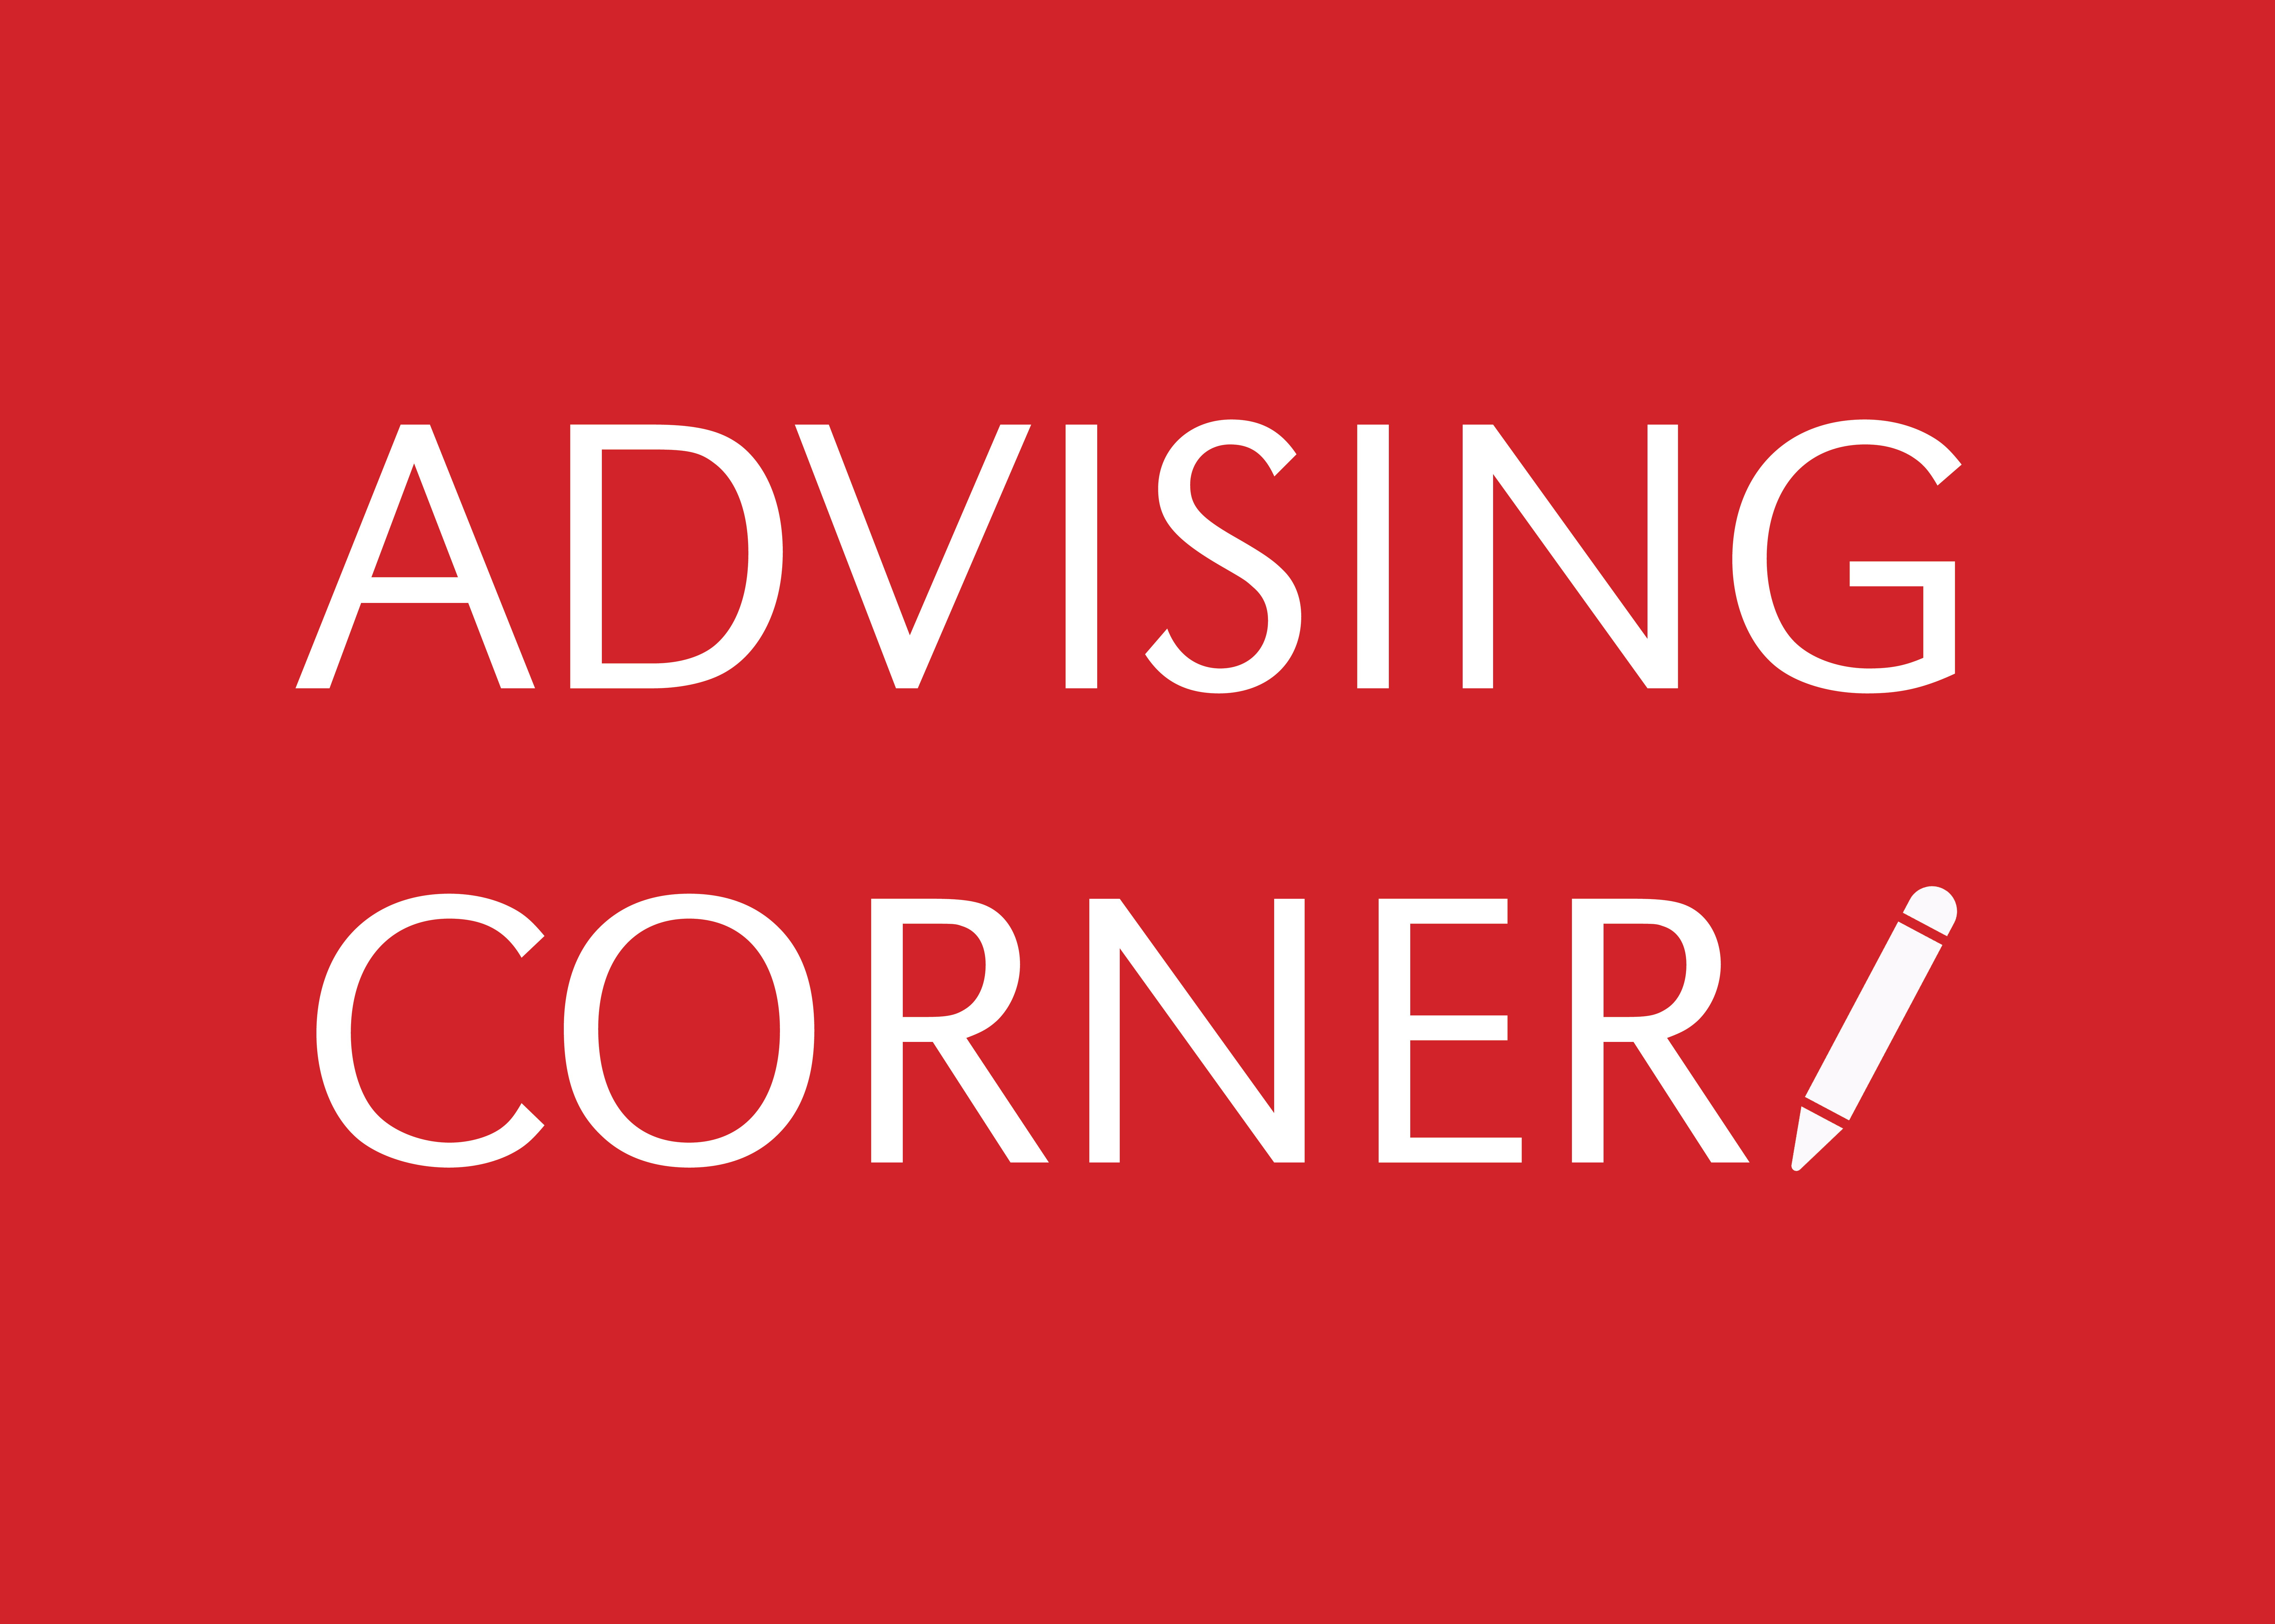 Advising Corner